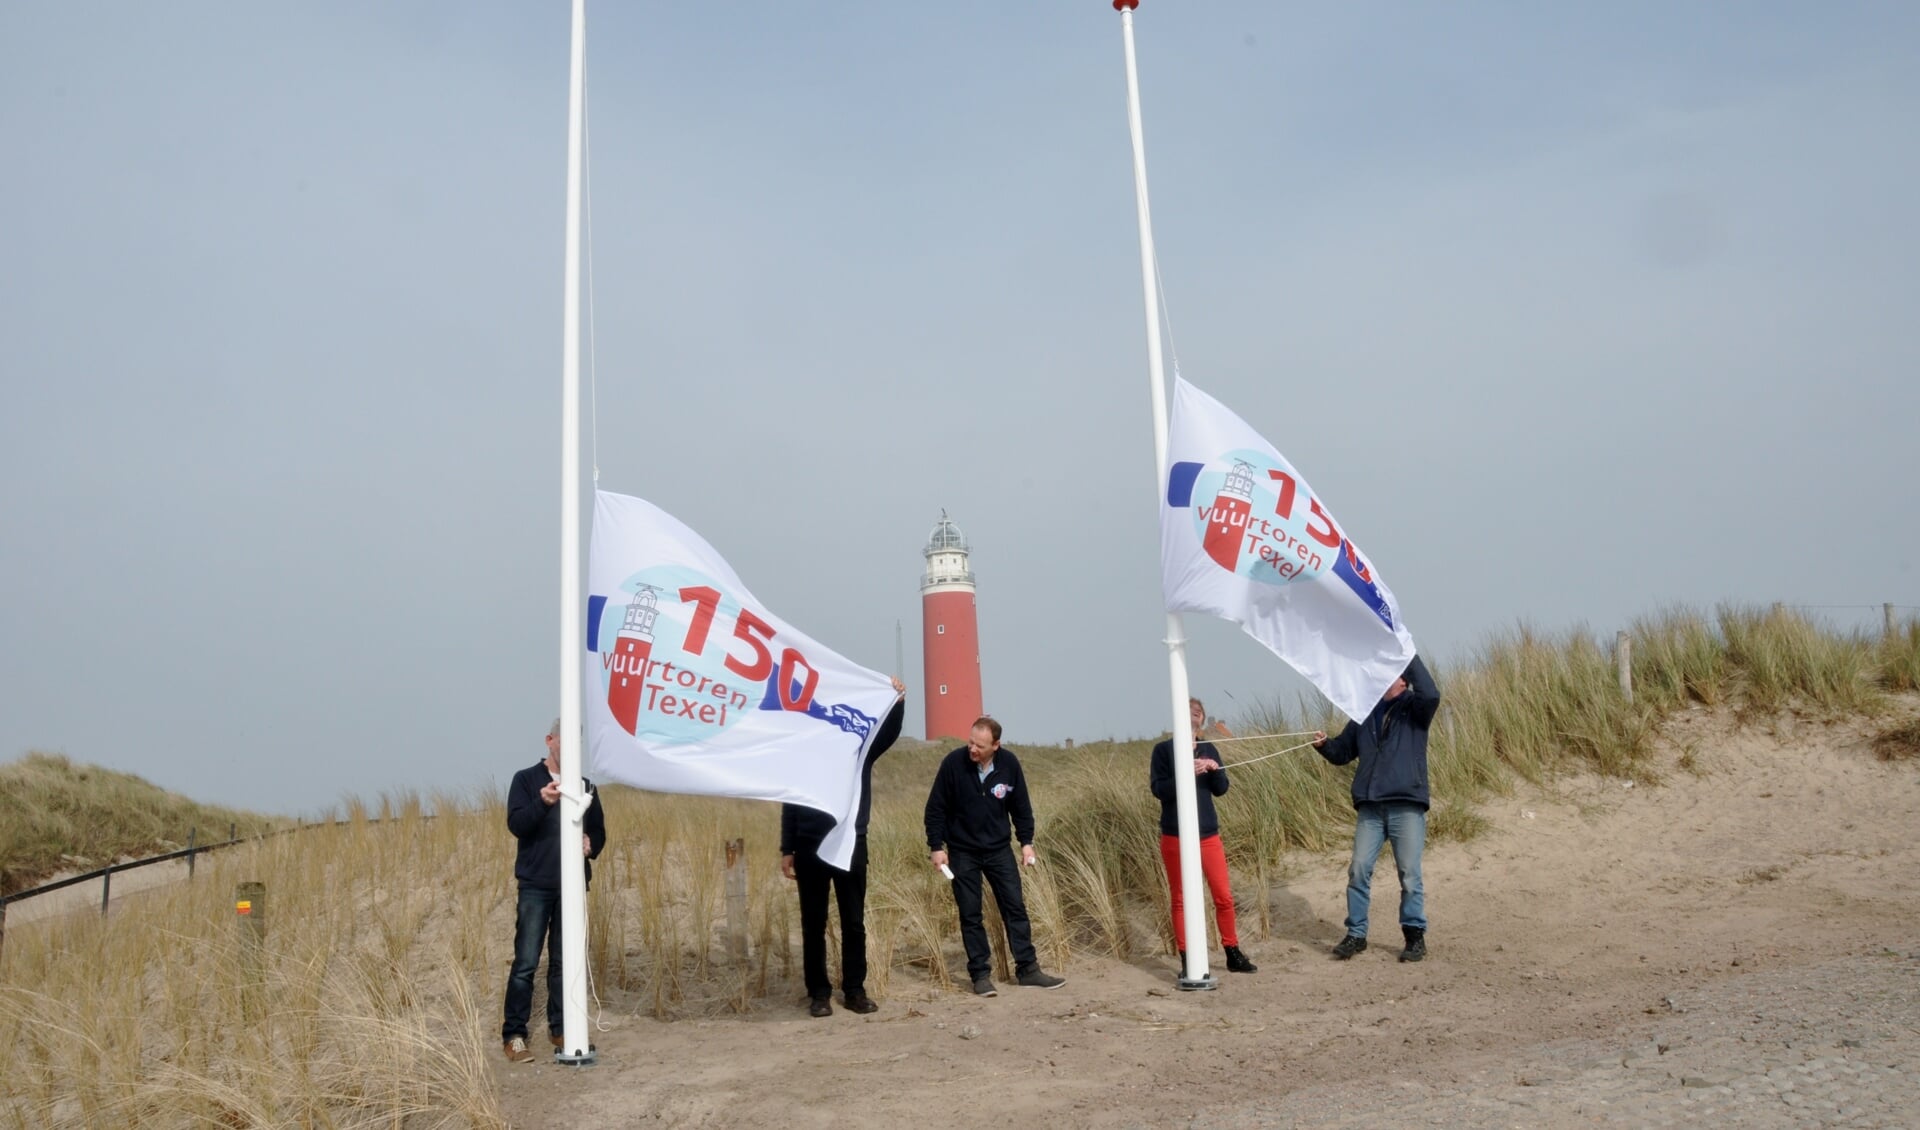 Medewerkers van Stichting Texels Museum hijsen de jubileumvlaggen bij de nieuwe entree van de vuurtoren.